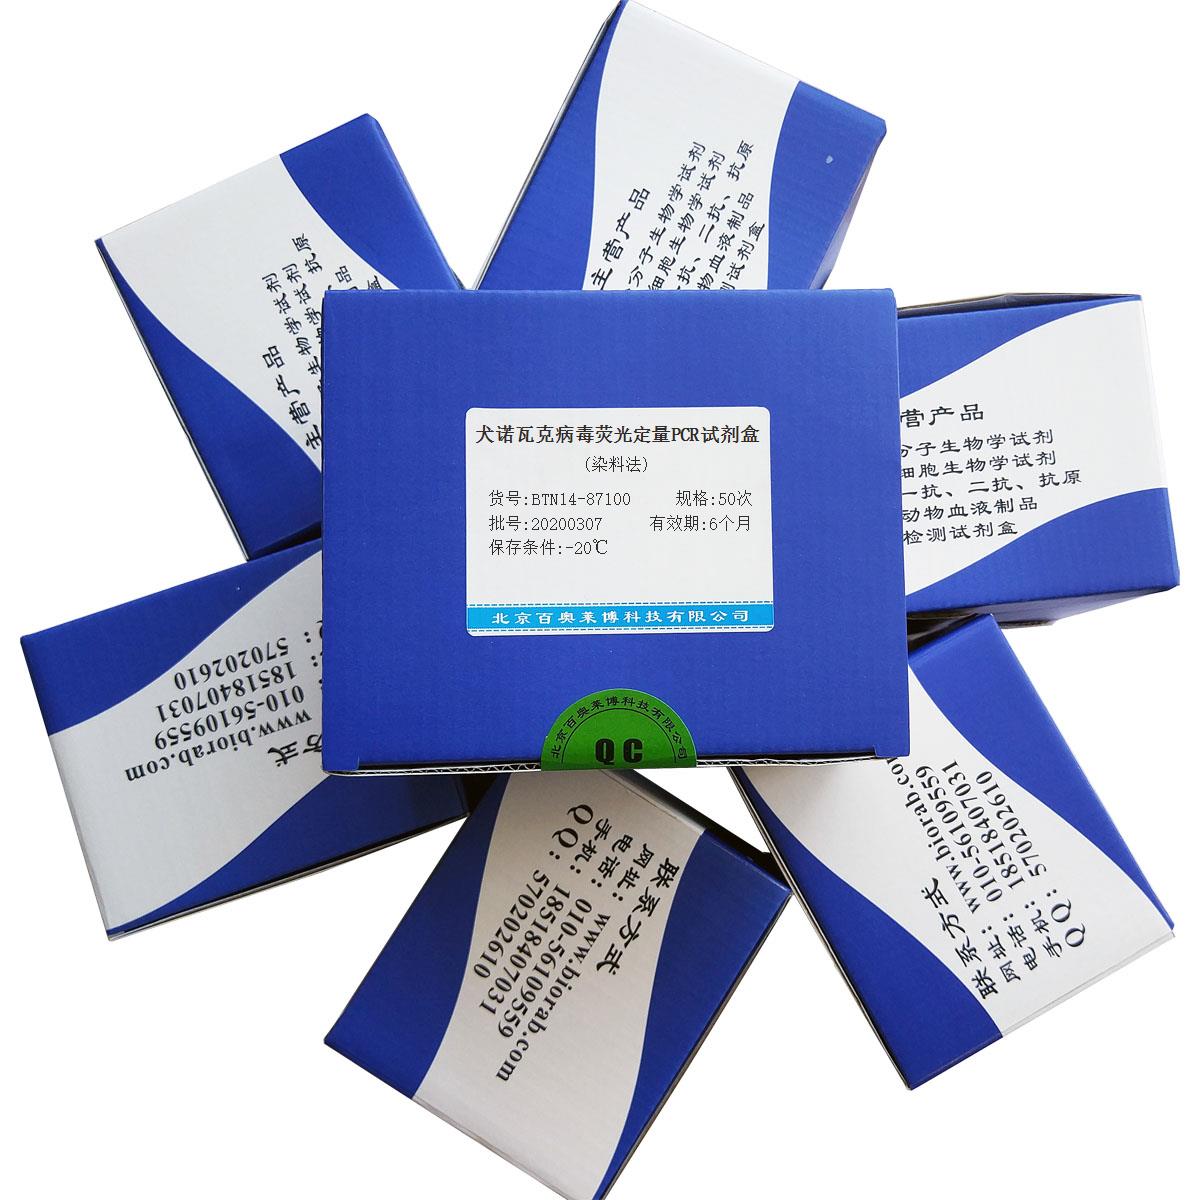 犬诺瓦克病毒荧光定量PCR试剂盒(染料法)